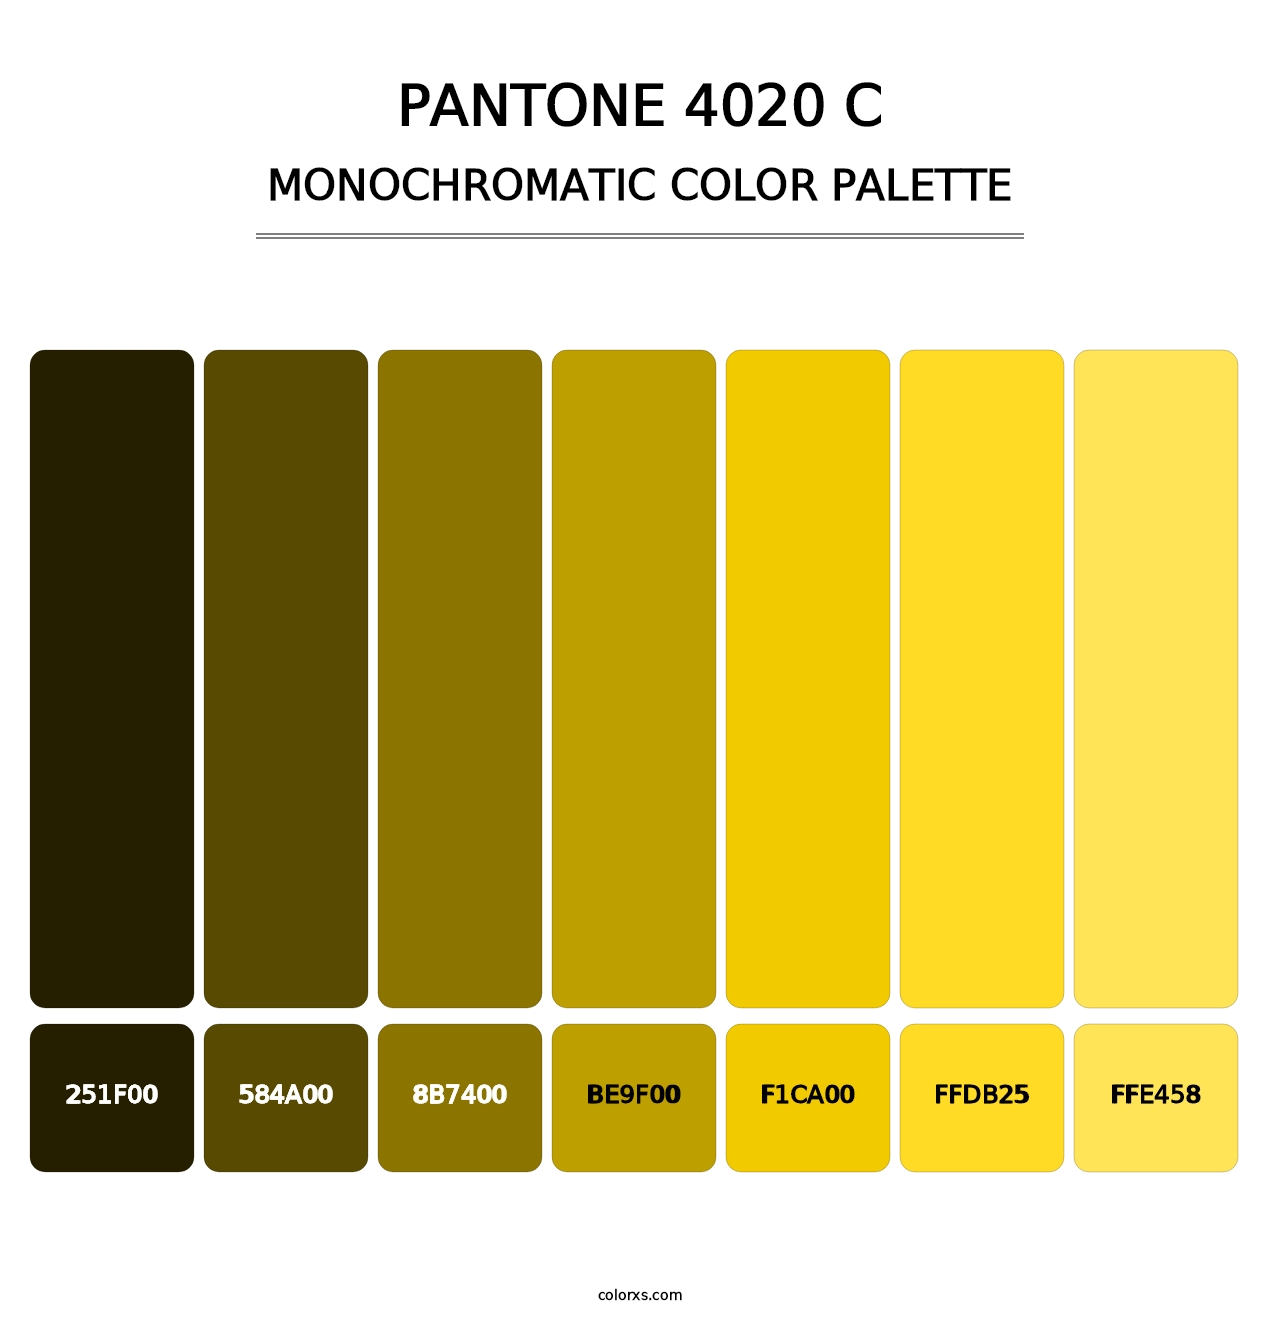 PANTONE 4020 C - Monochromatic Color Palette